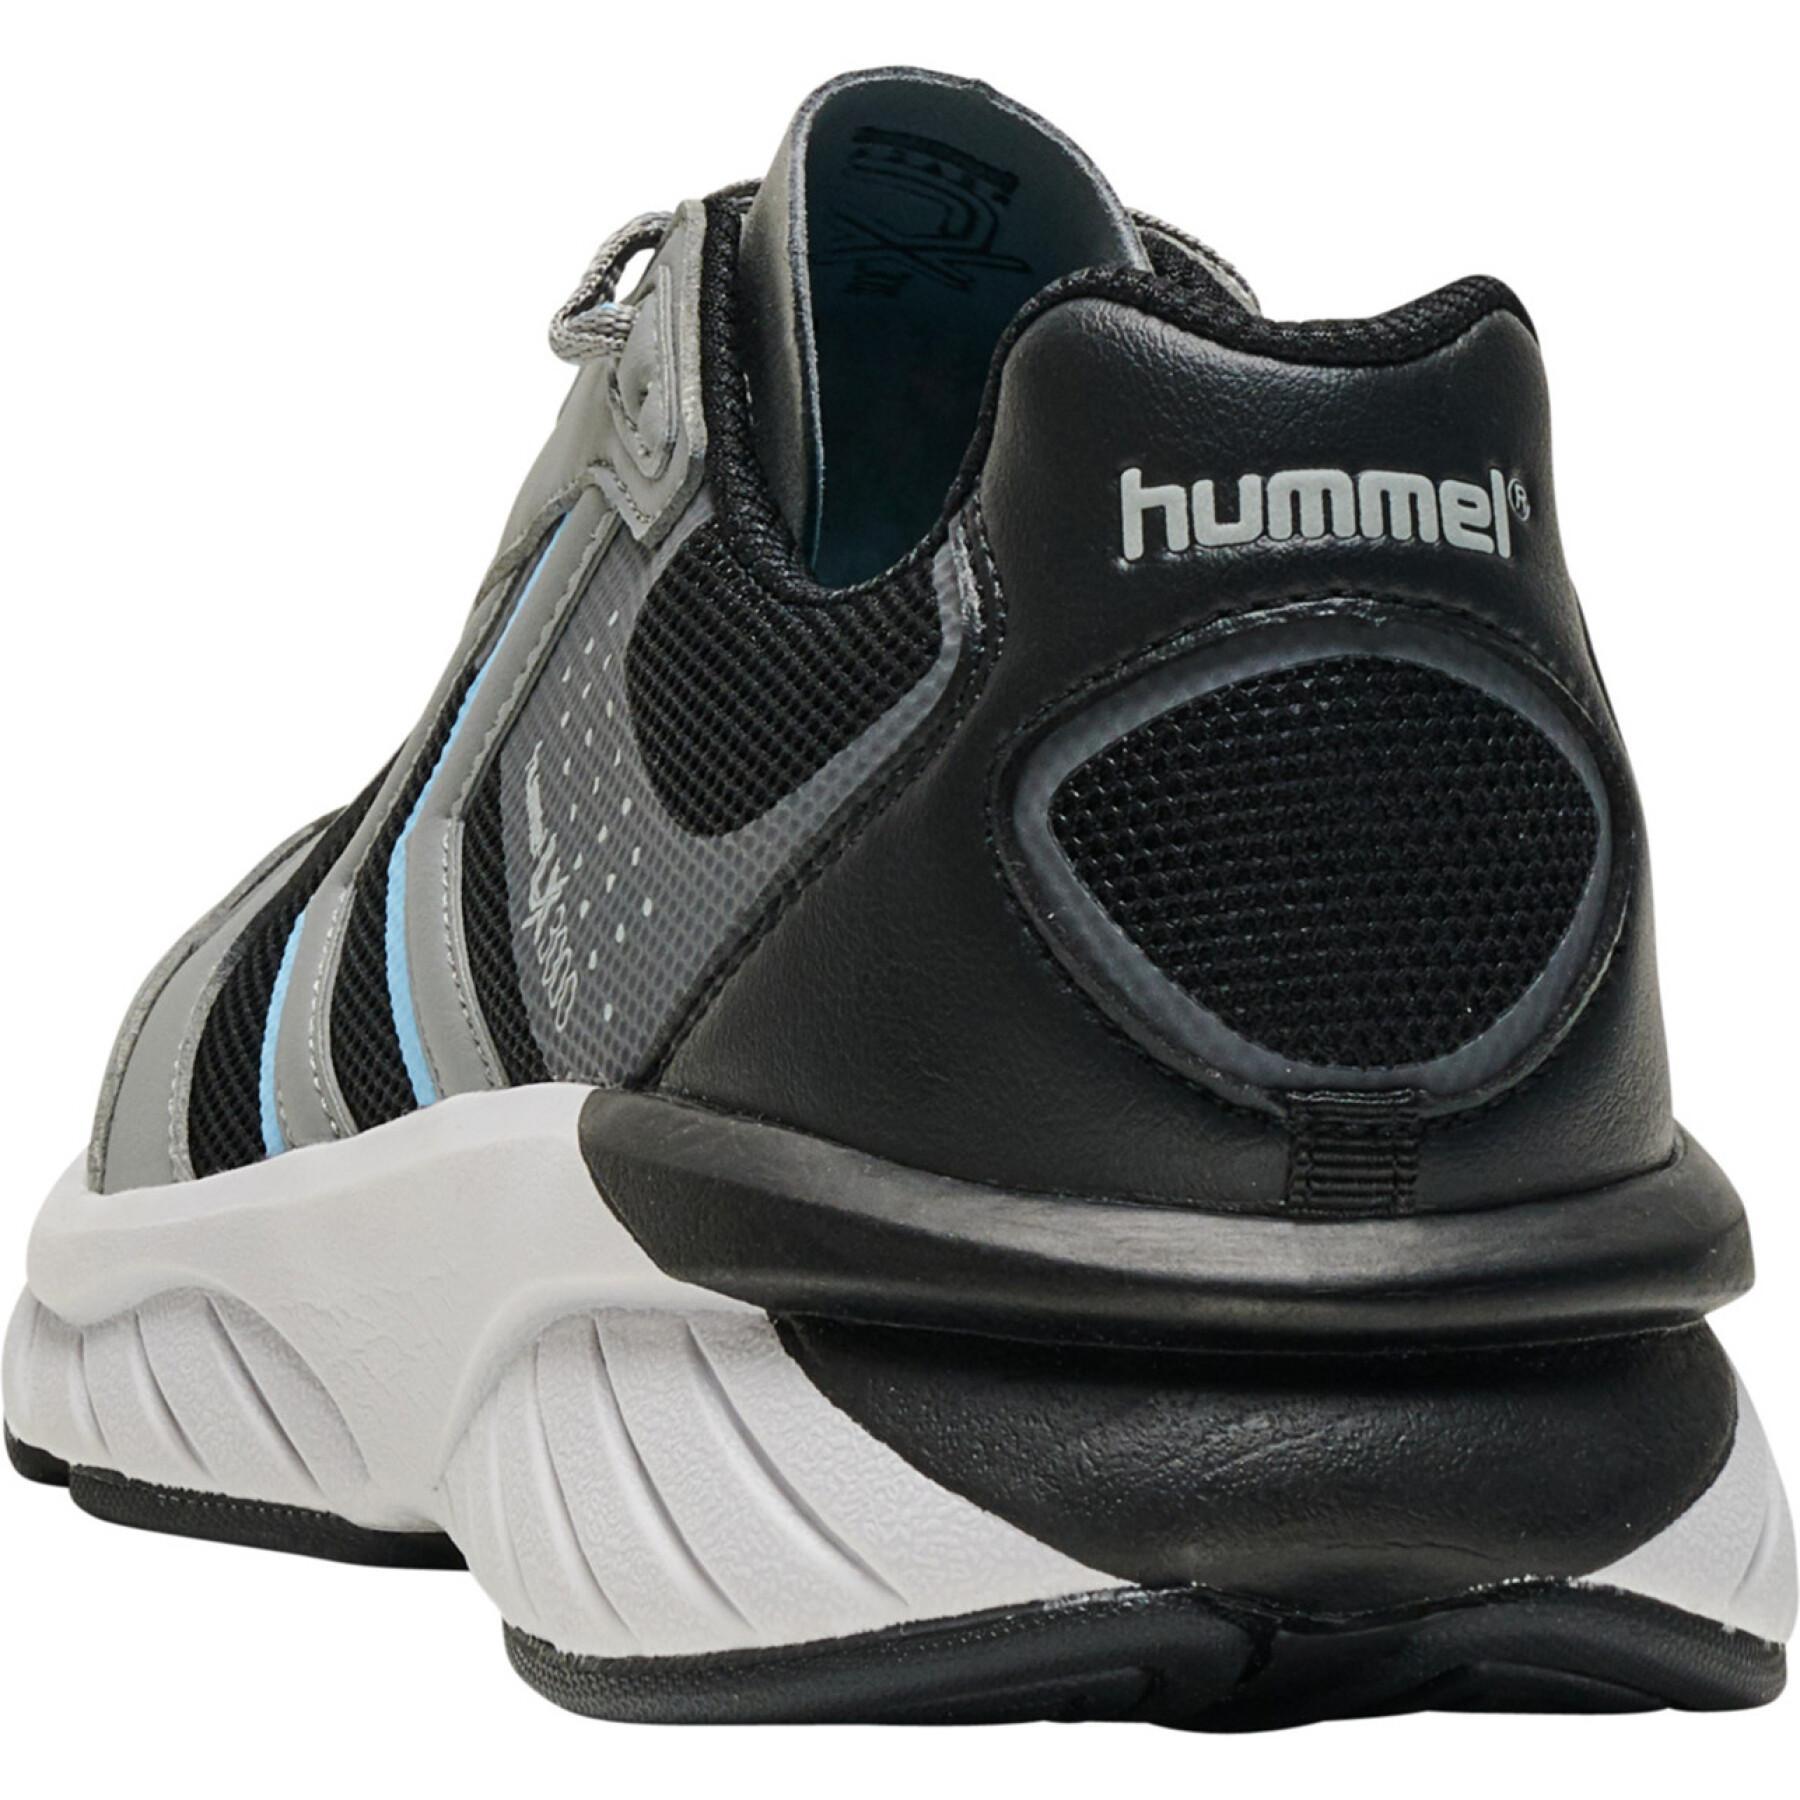 Chaussures Hummel Reach lx 3000